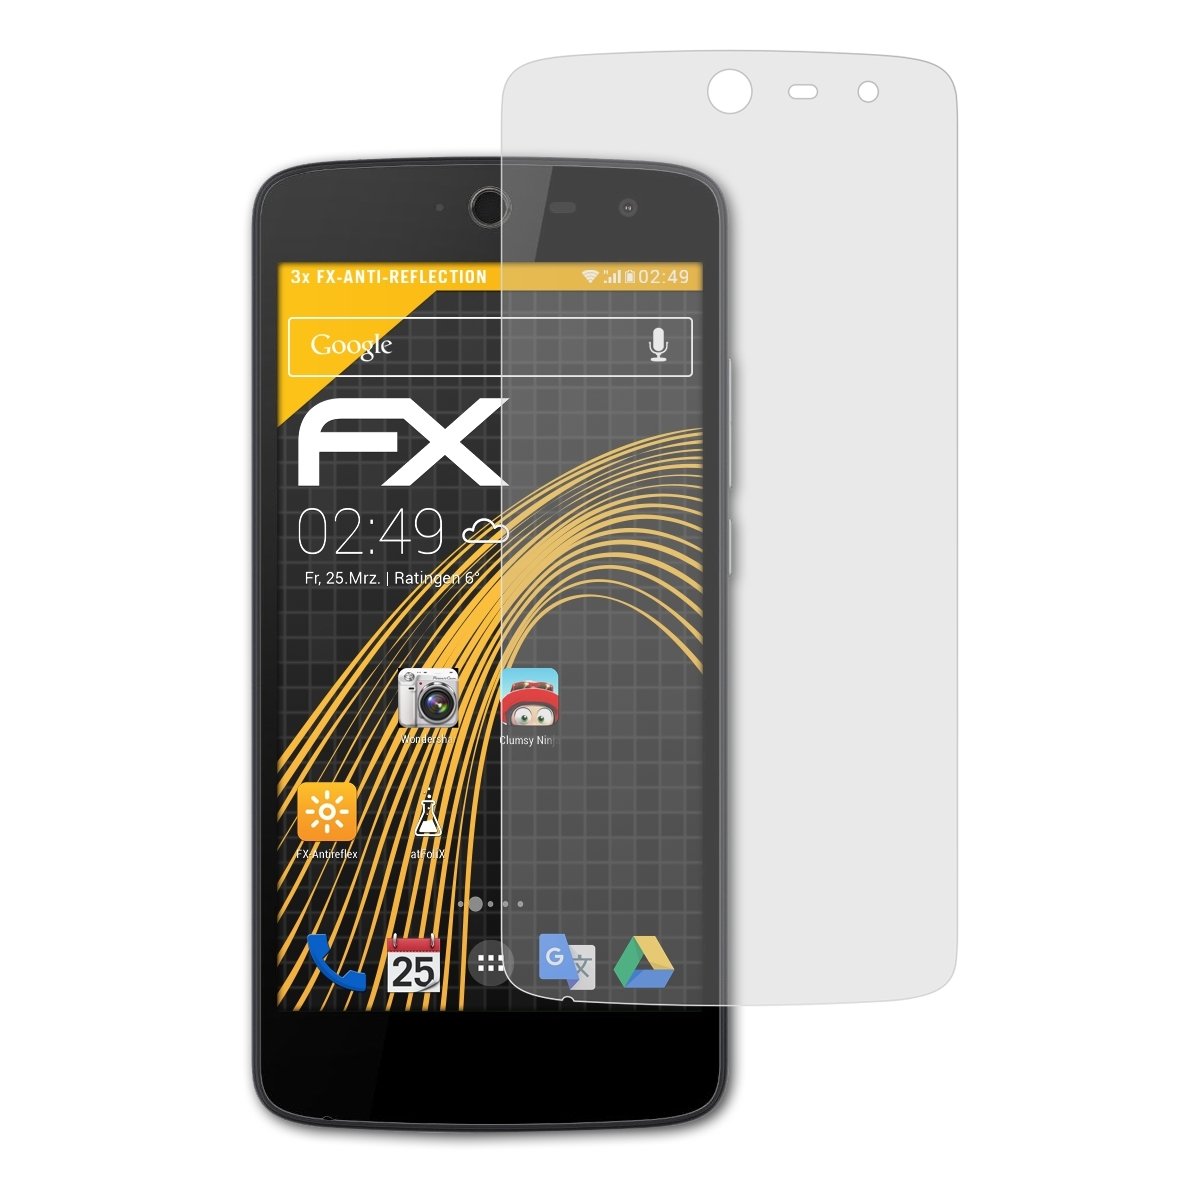 ATFOLIX 3x FX-Antireflex Zest) Acer Liquid Displayschutz(für